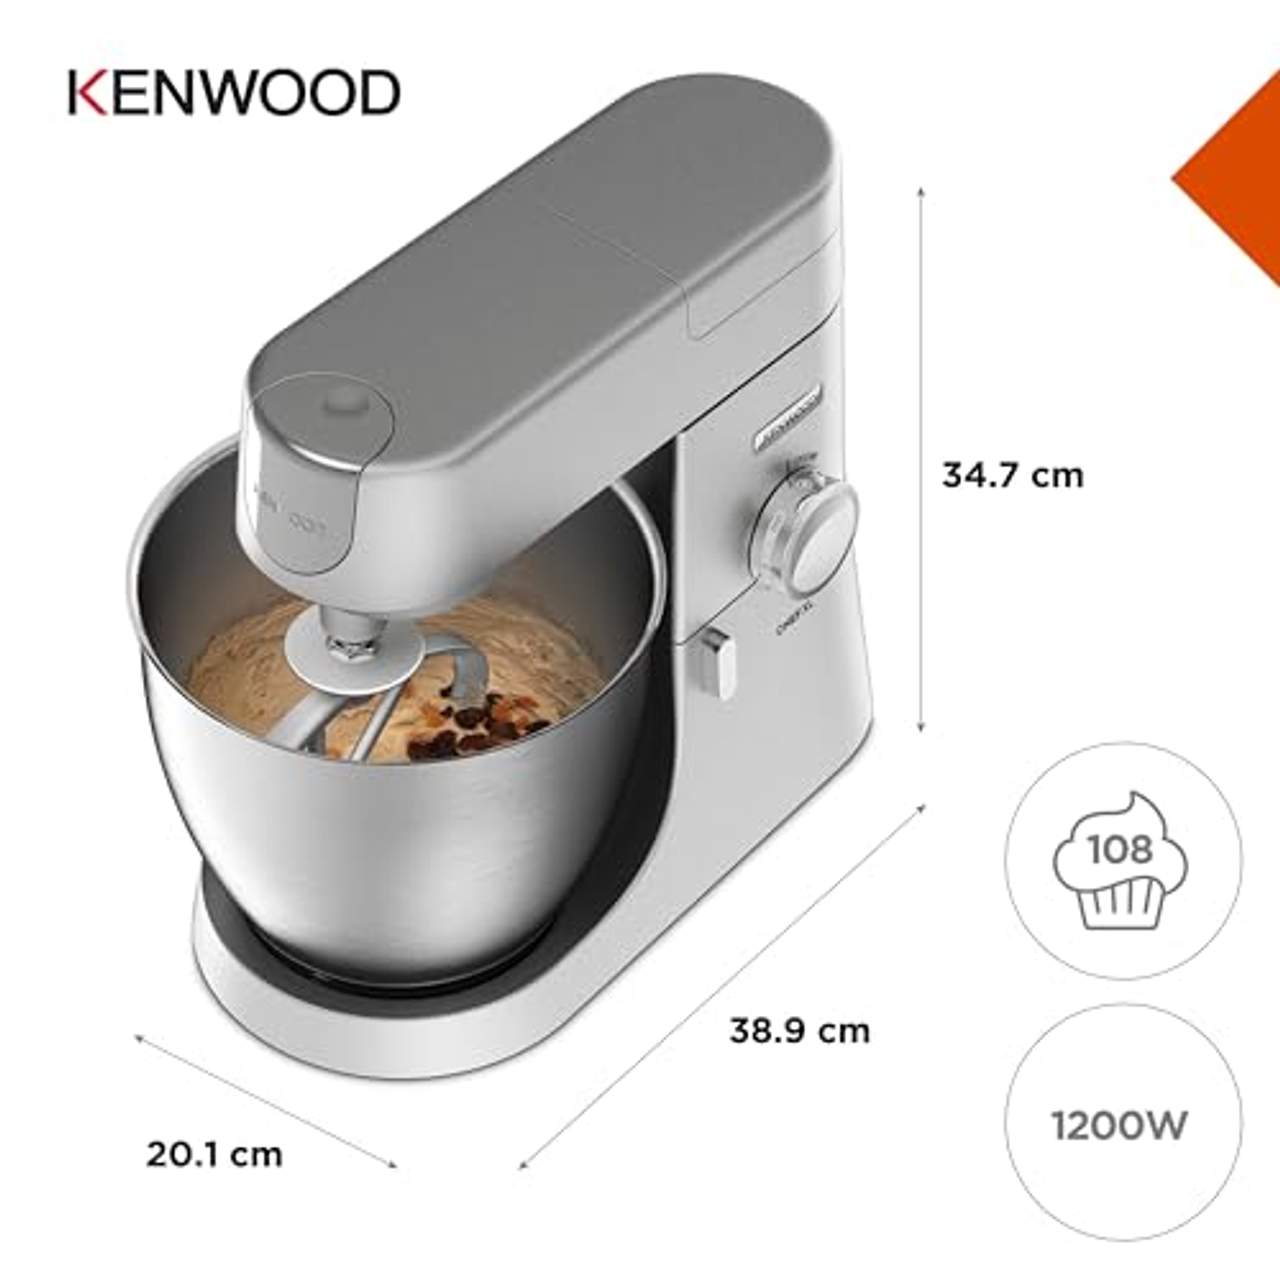 Kenwood Chef XL KVL4100S Küchenmaschine